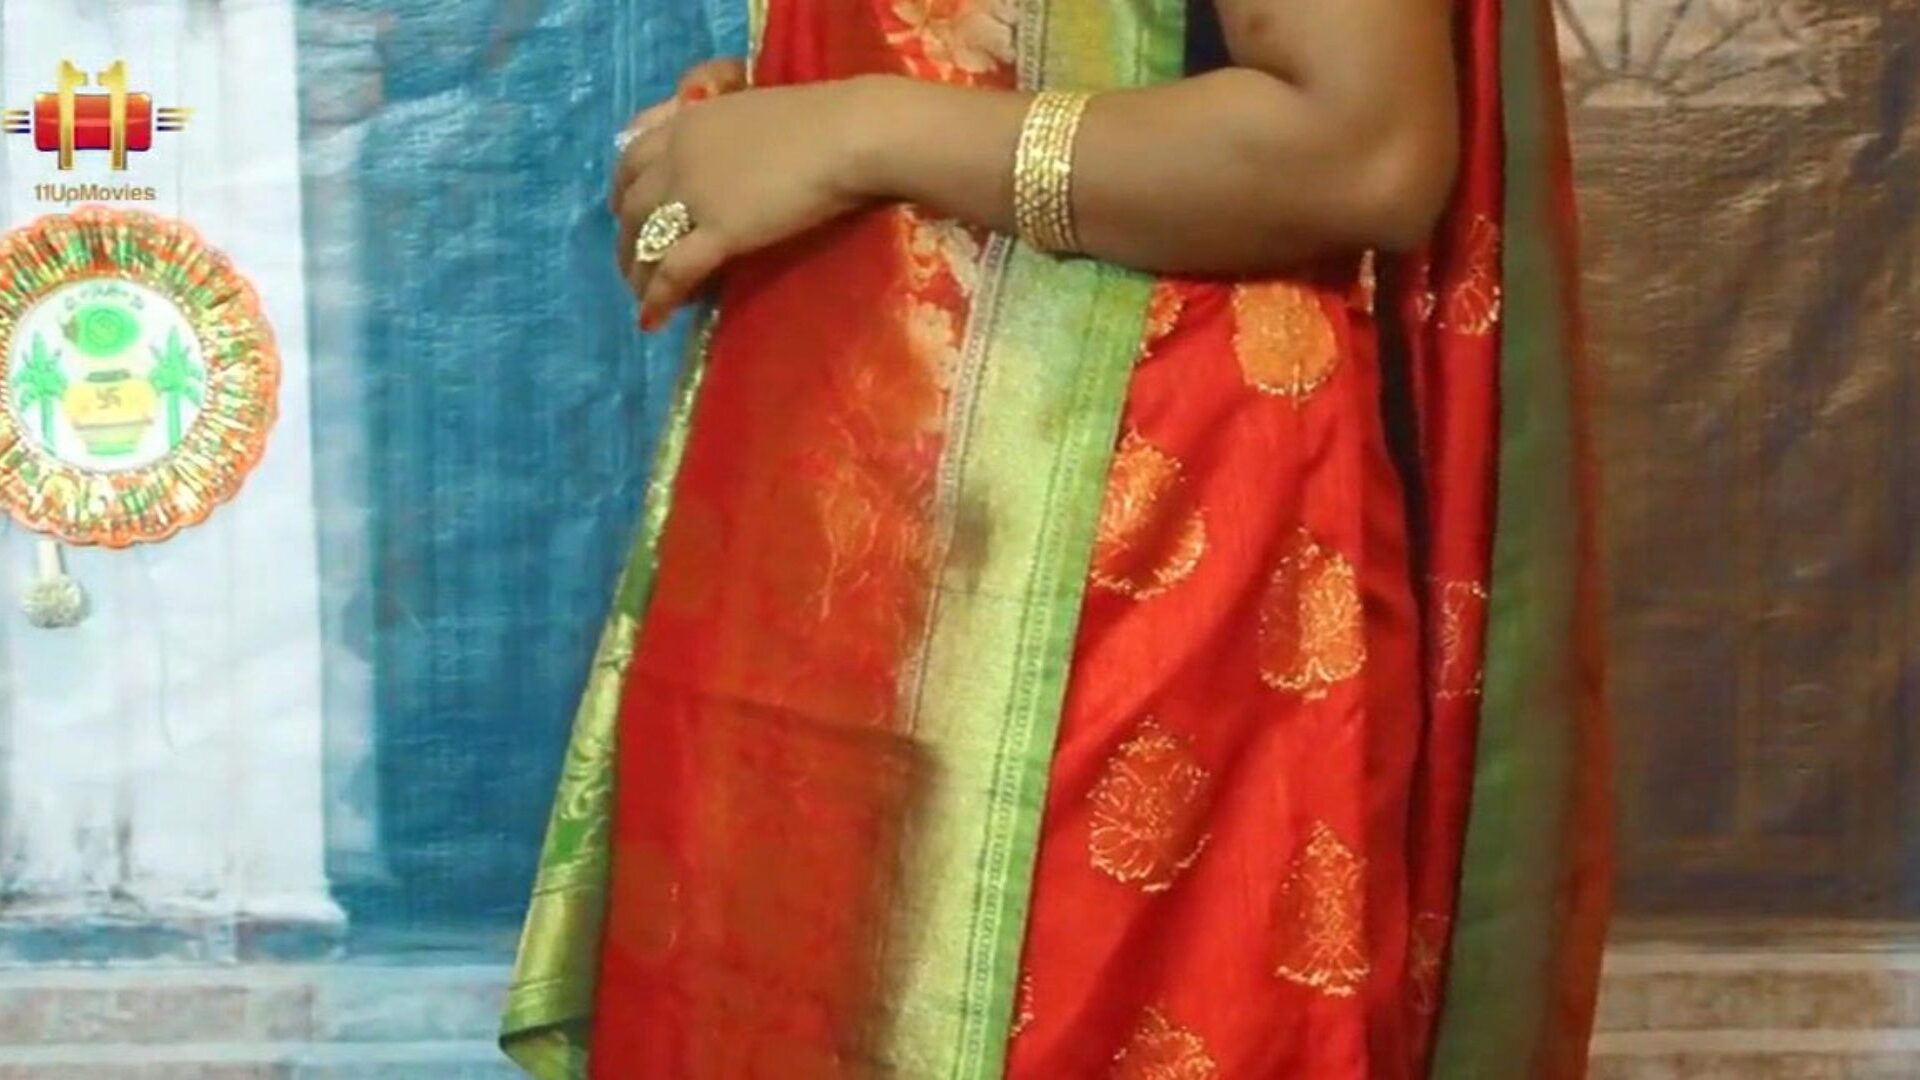 Hint teyze ağız sari açar ve bluz mallu olgun teyze işaretçi kız kardeşler göbek deliği karın